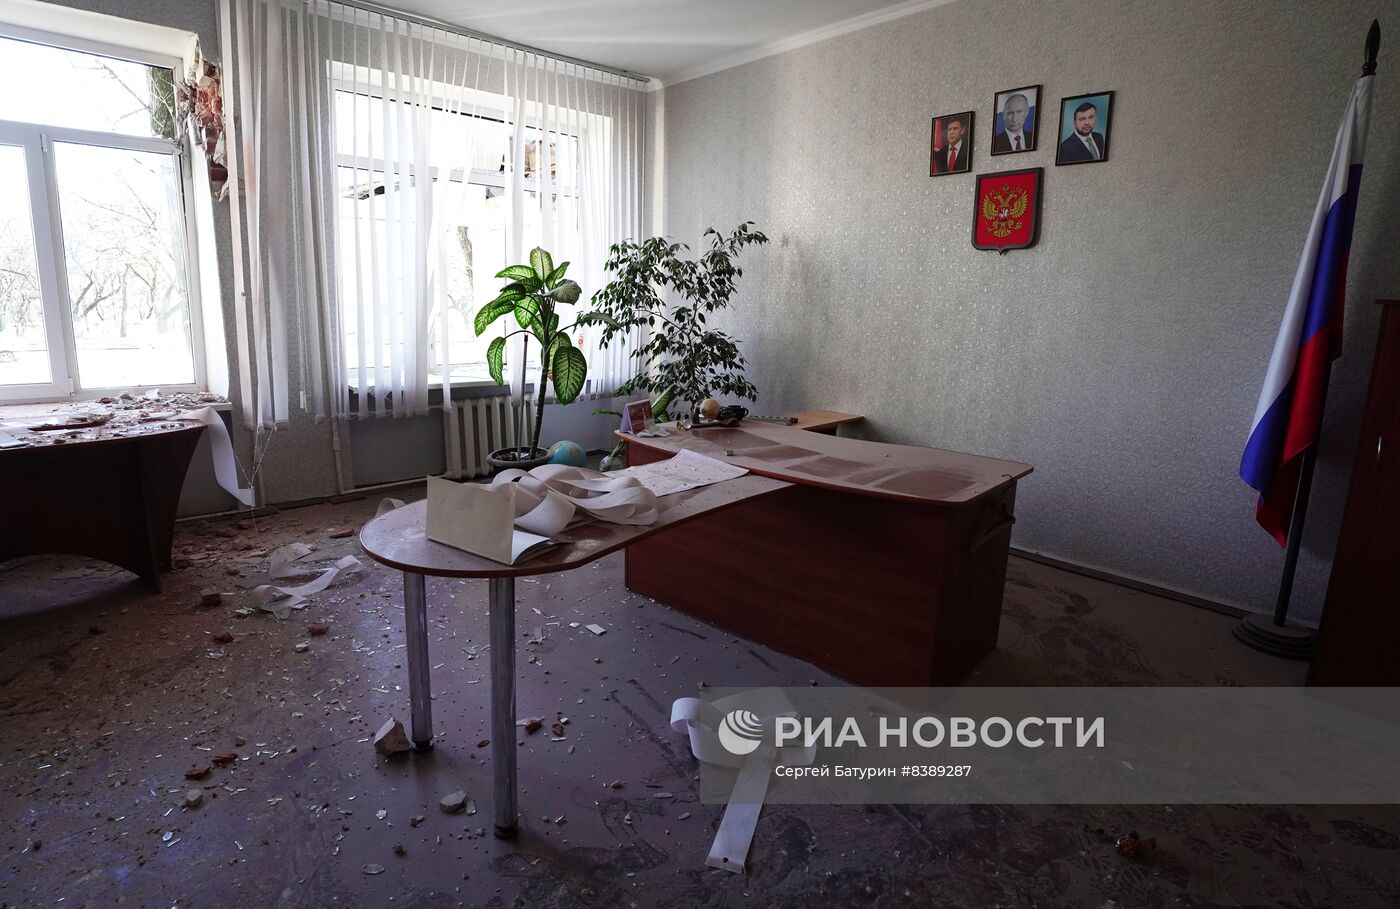 Последствия обстрела со стороны ВСУ школы в Донецке